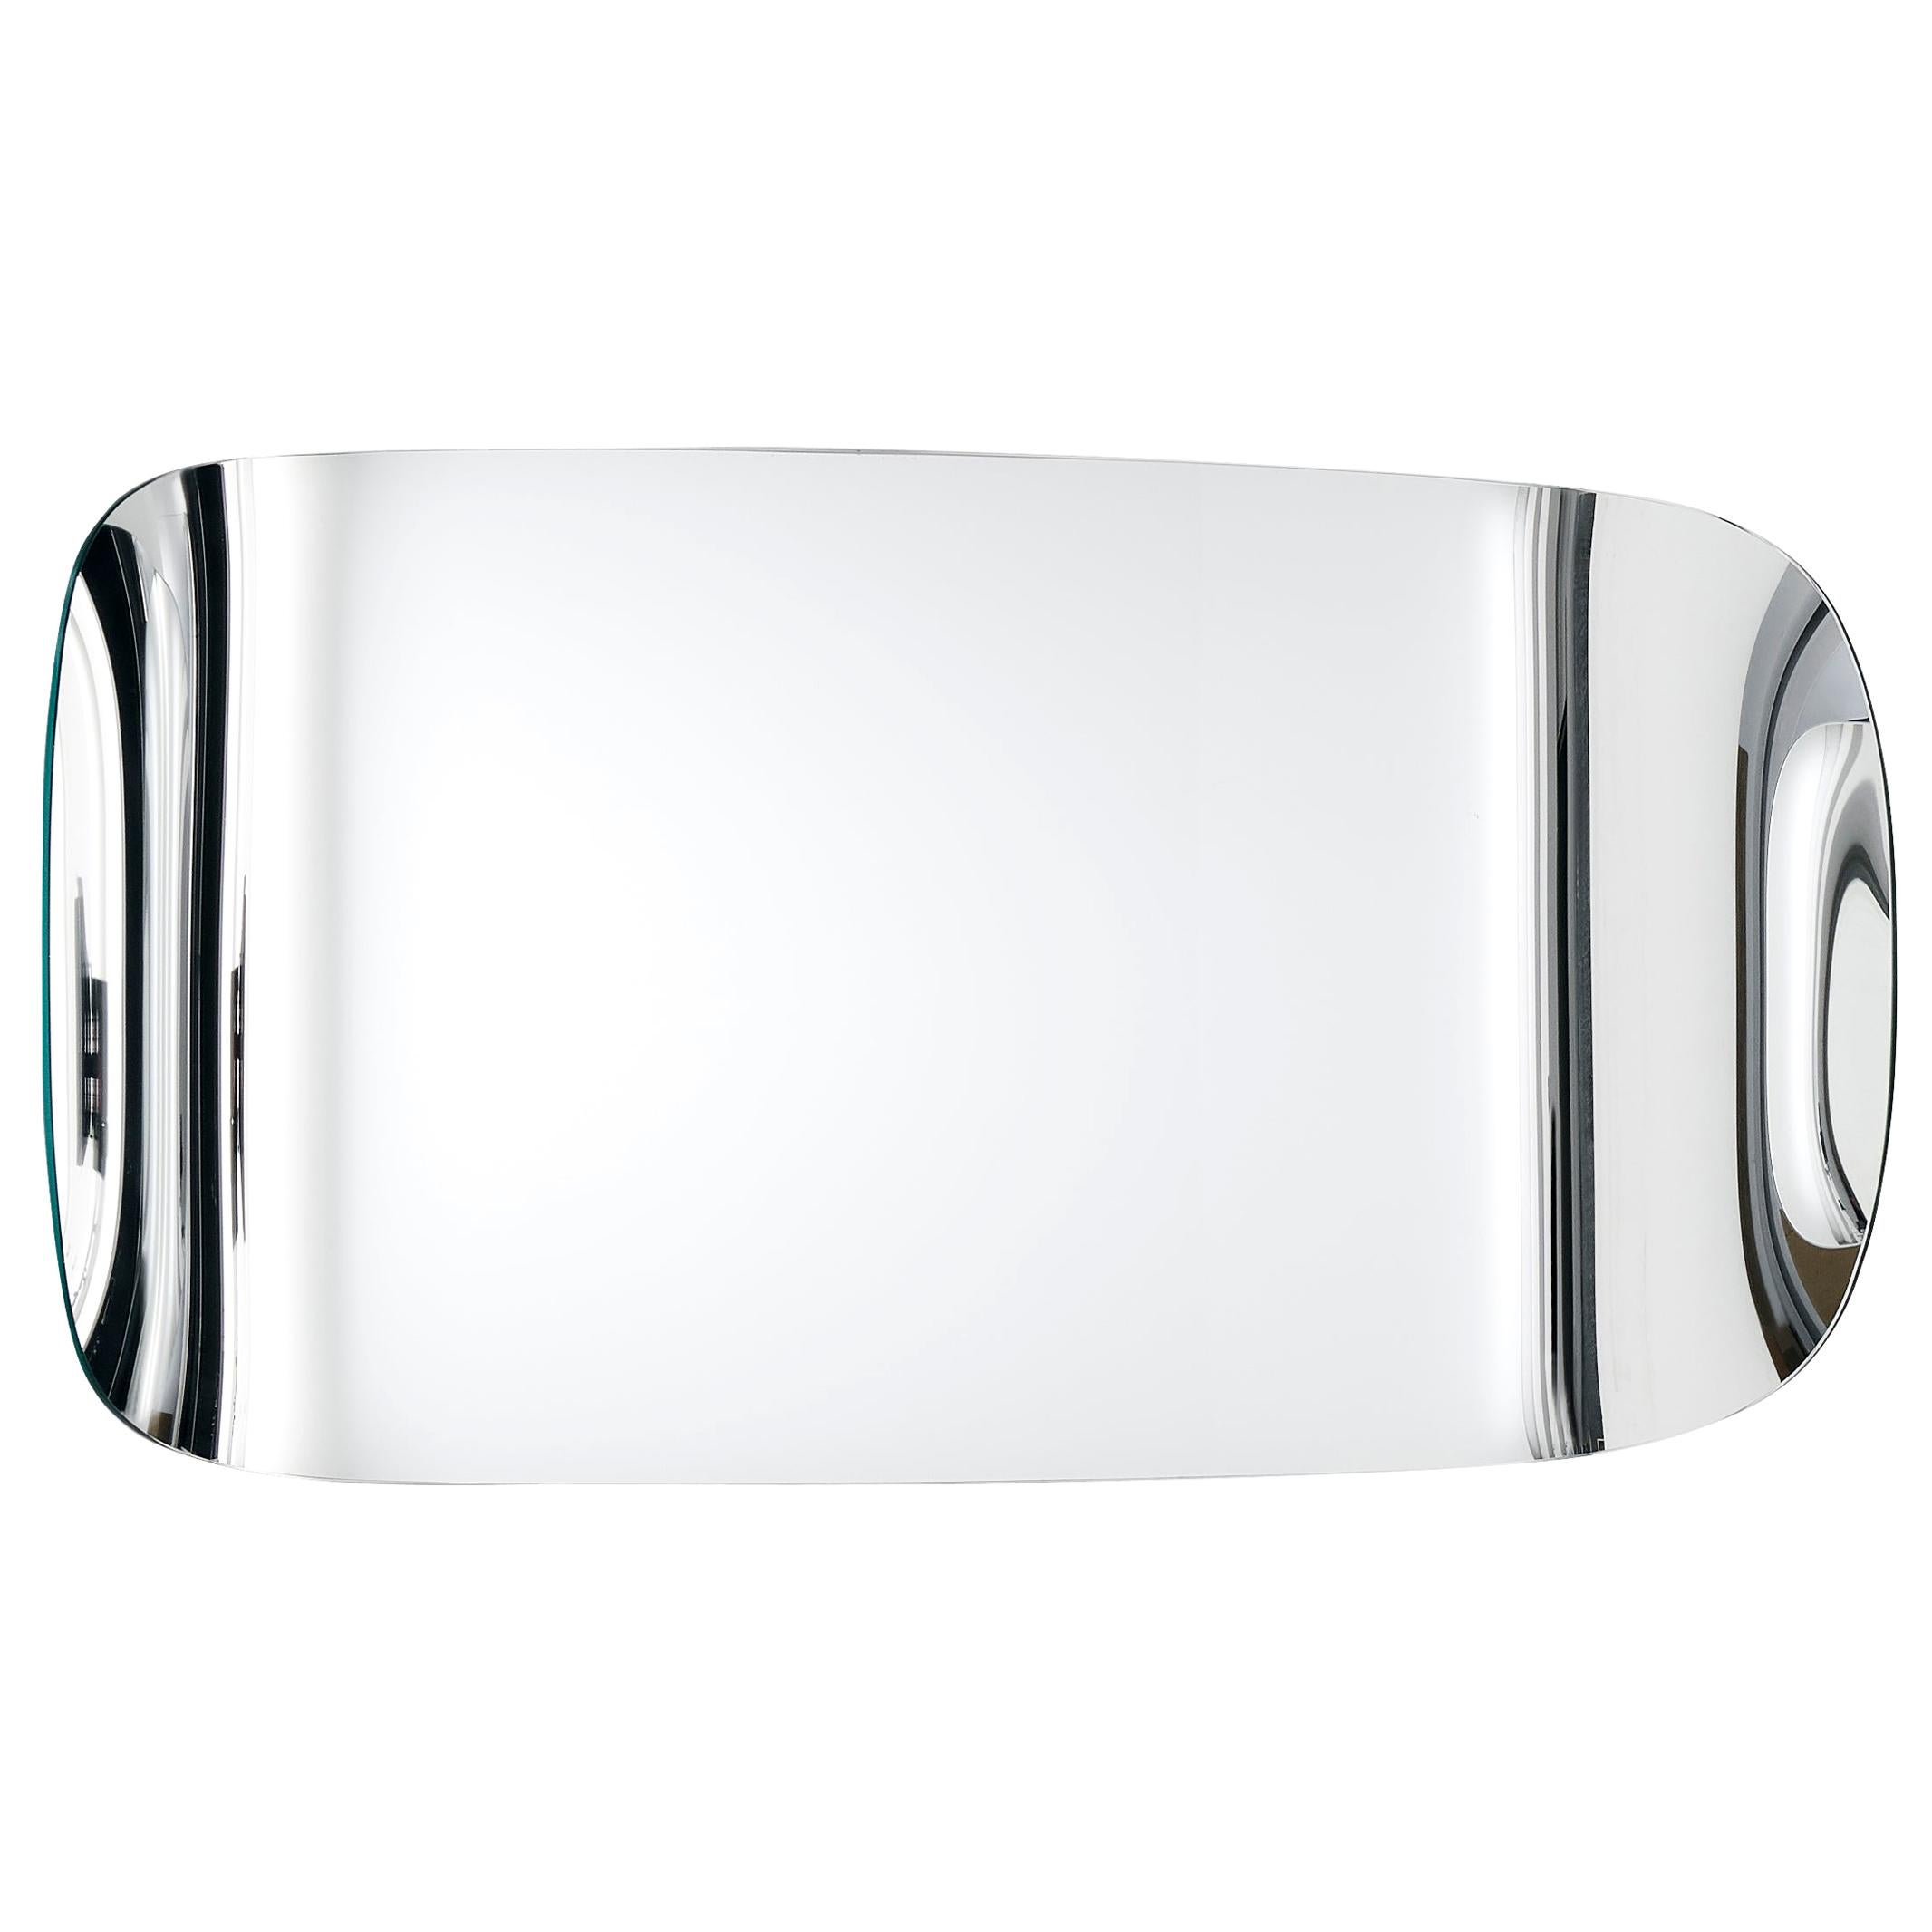 Glas Italia Marlene Rectangular Wall Mirror, by Philippe Starck & S. Schito